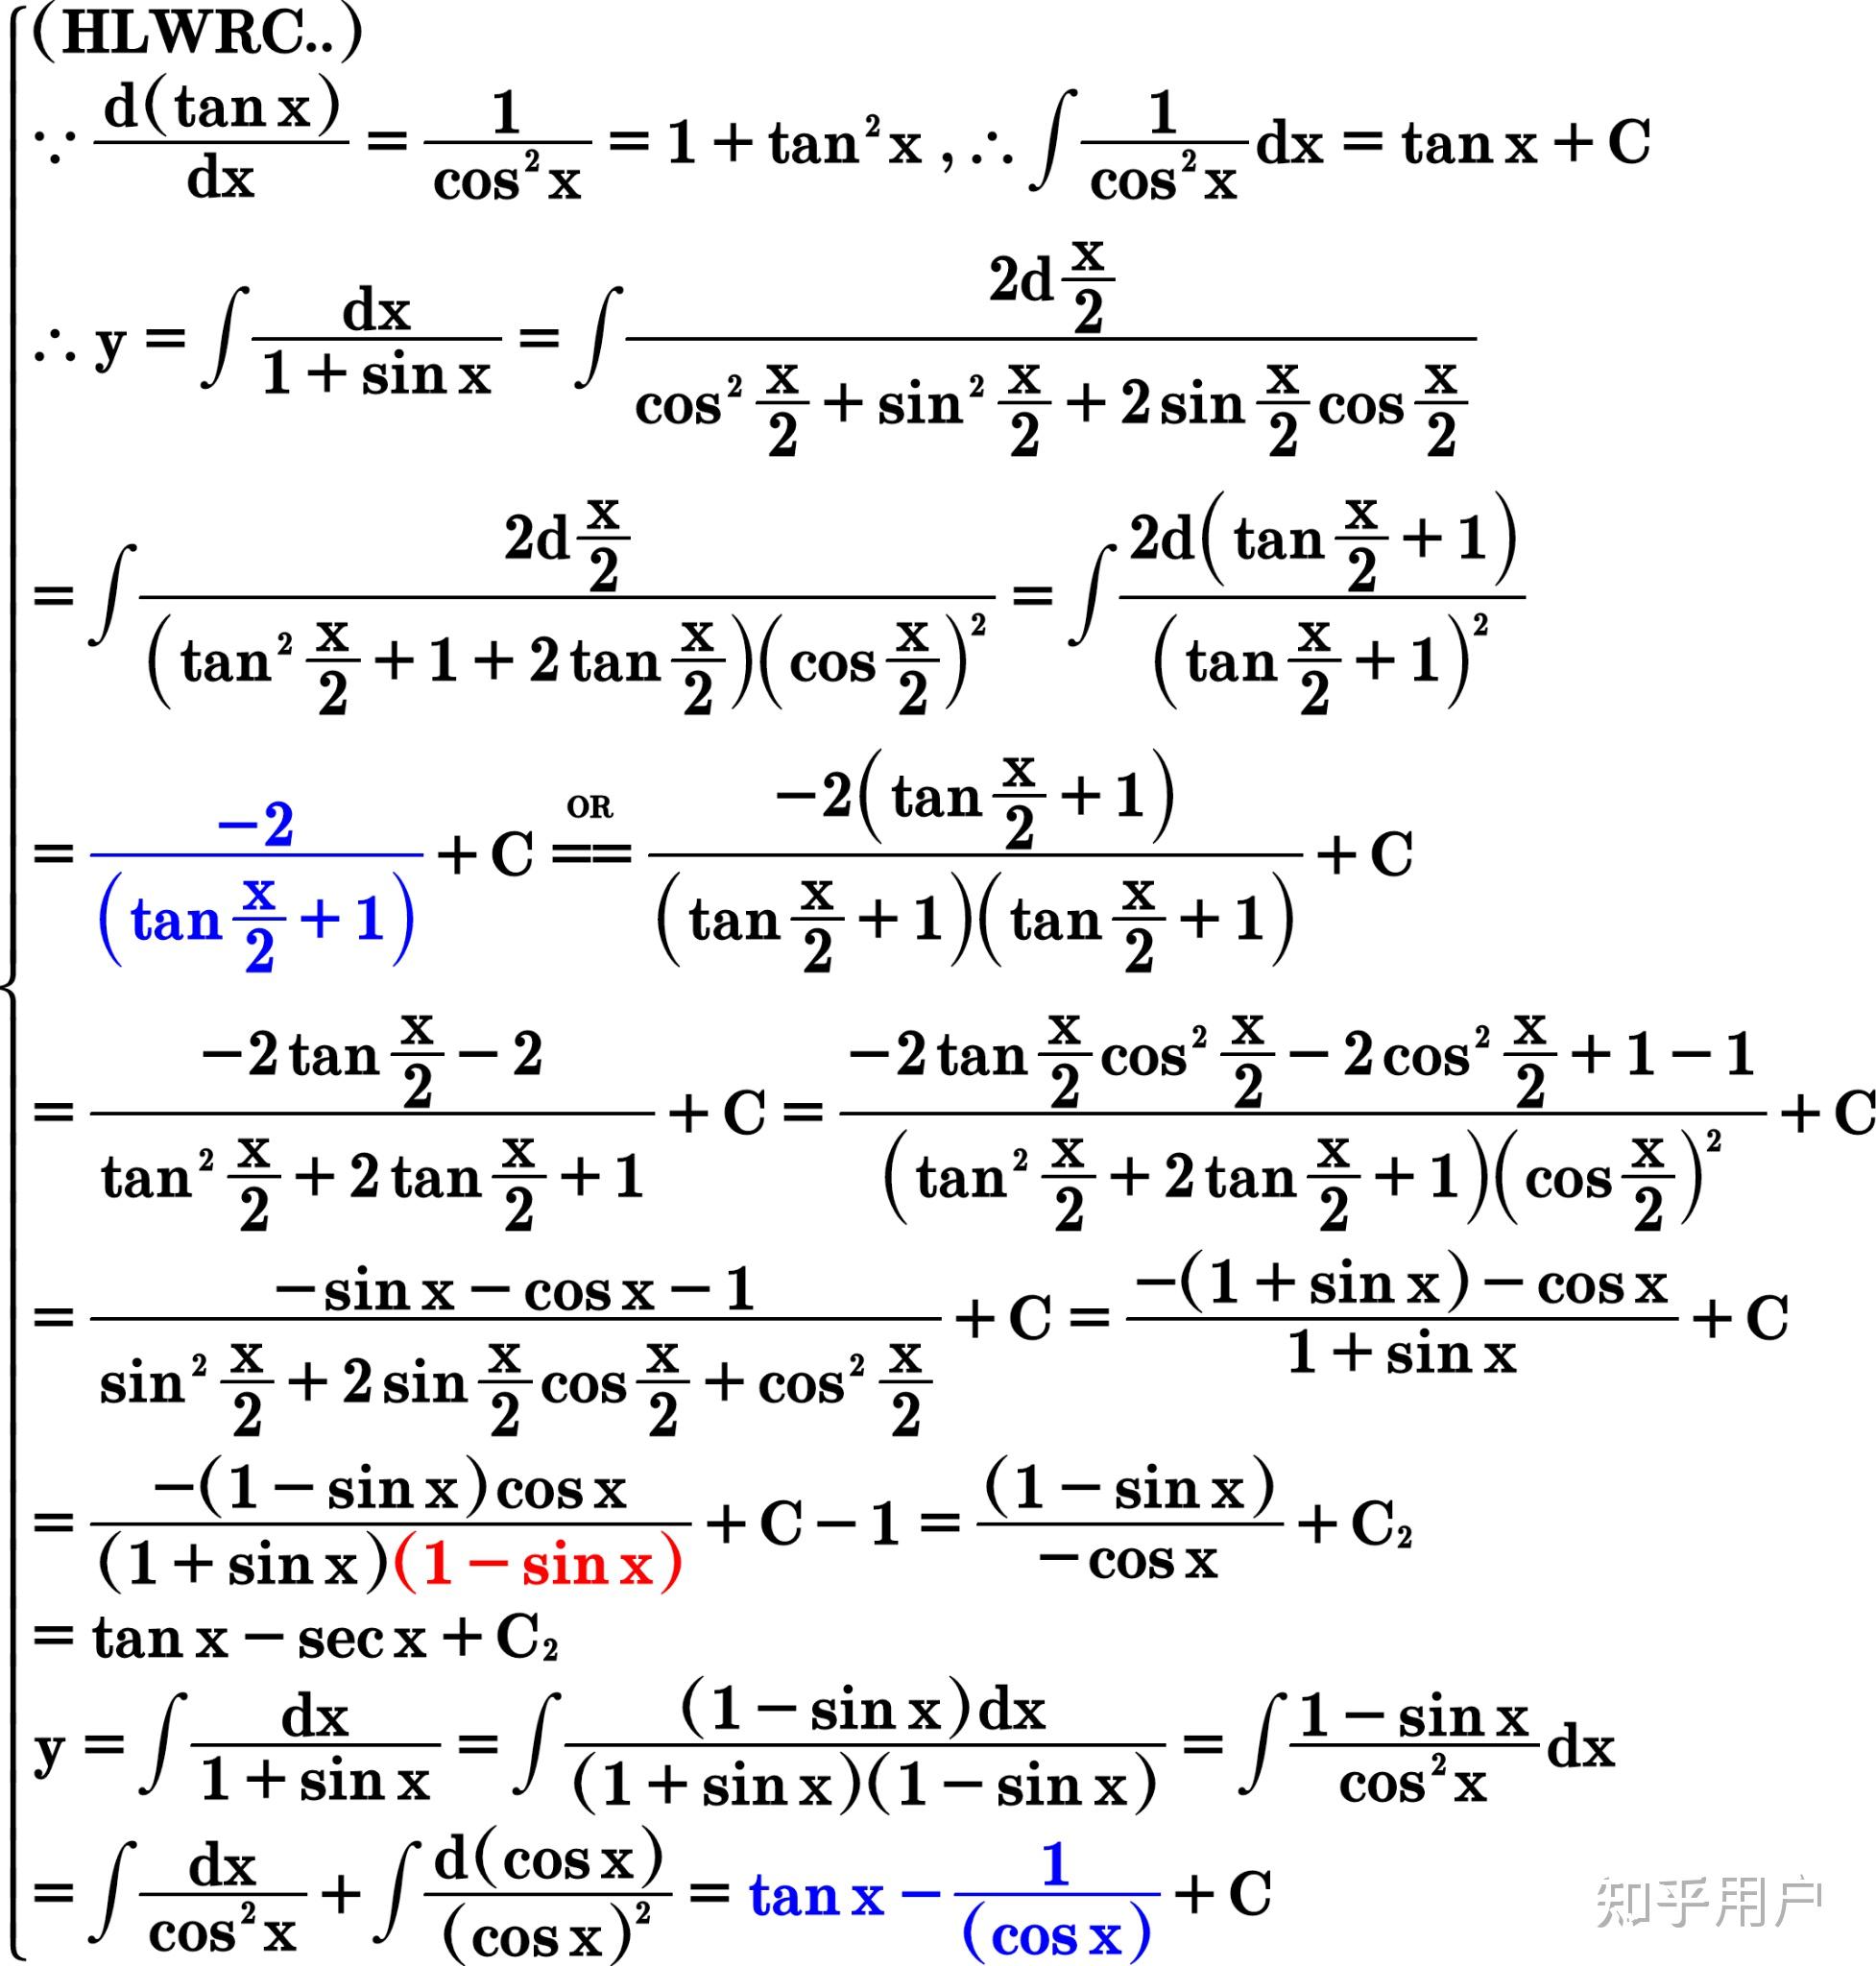 请问∫ 1/1 sinx dx怎样用多种方法求解? 